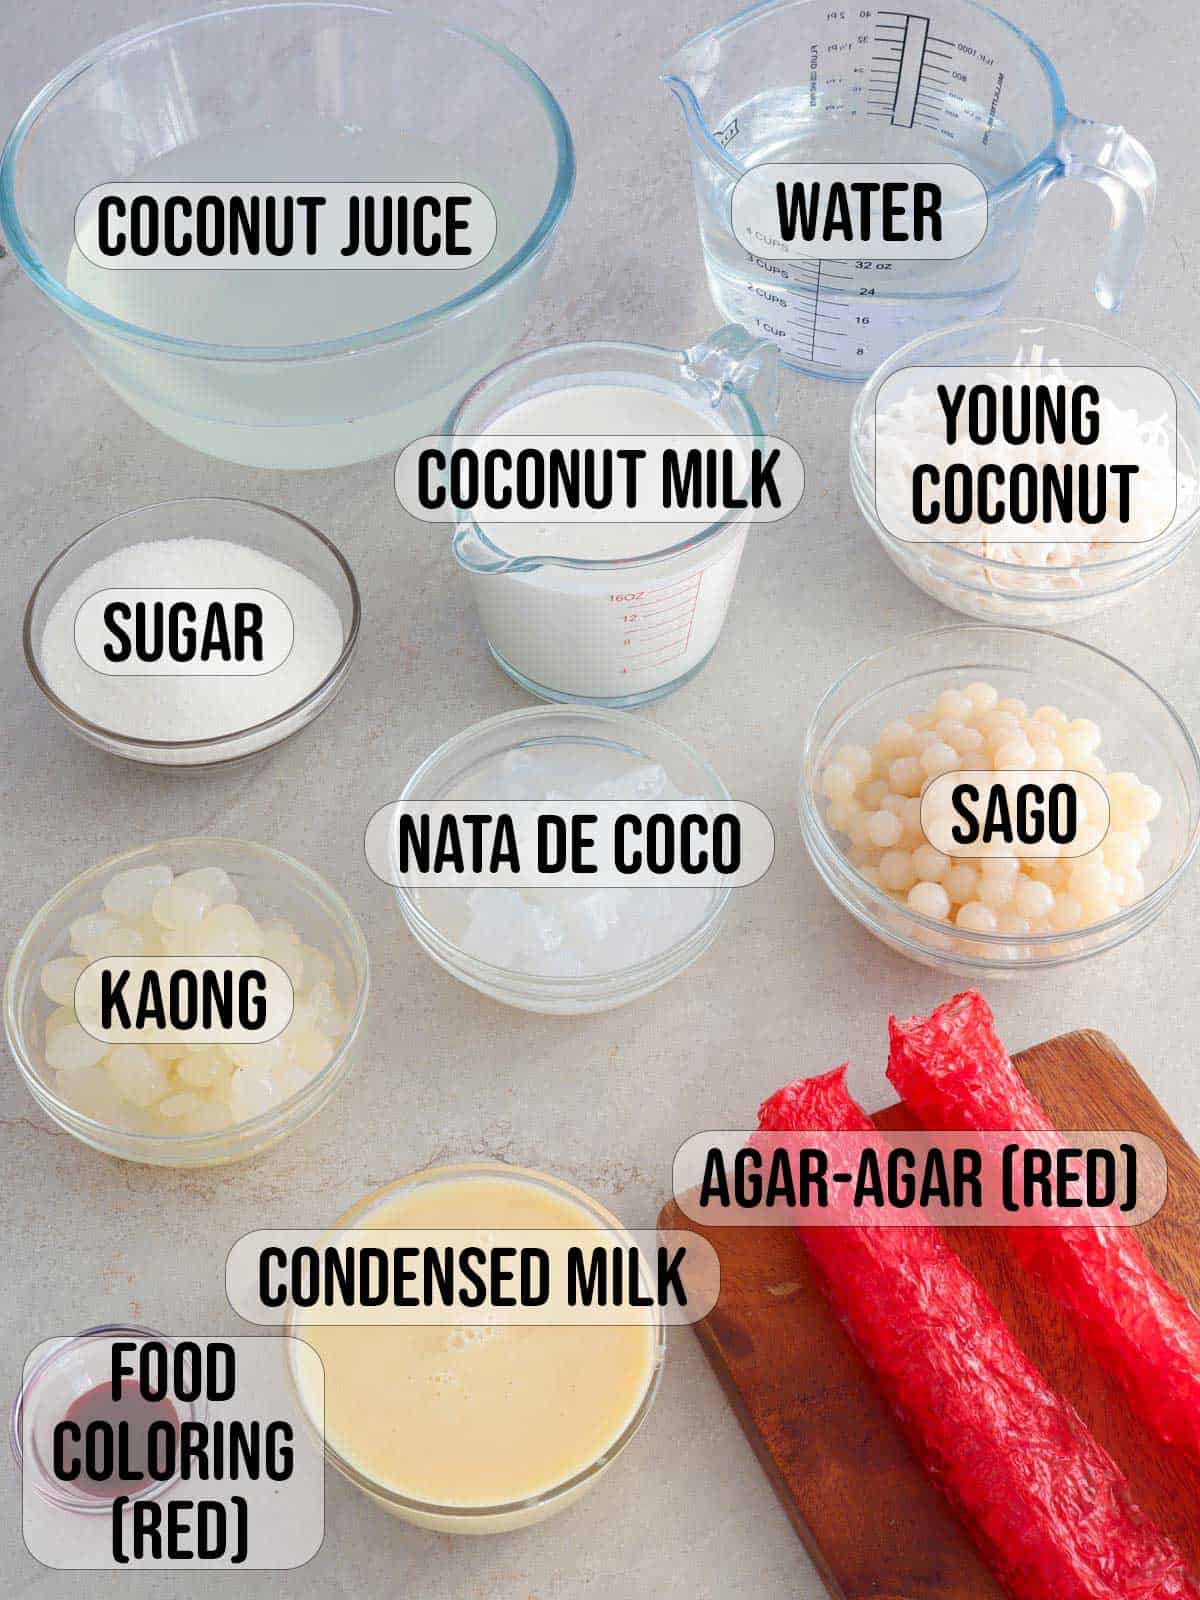 coconut juice, coconut milk, condensed milk, agar-agar bars, sugar, kaong, nata de coco, buko, food coloring, sago in bowls.